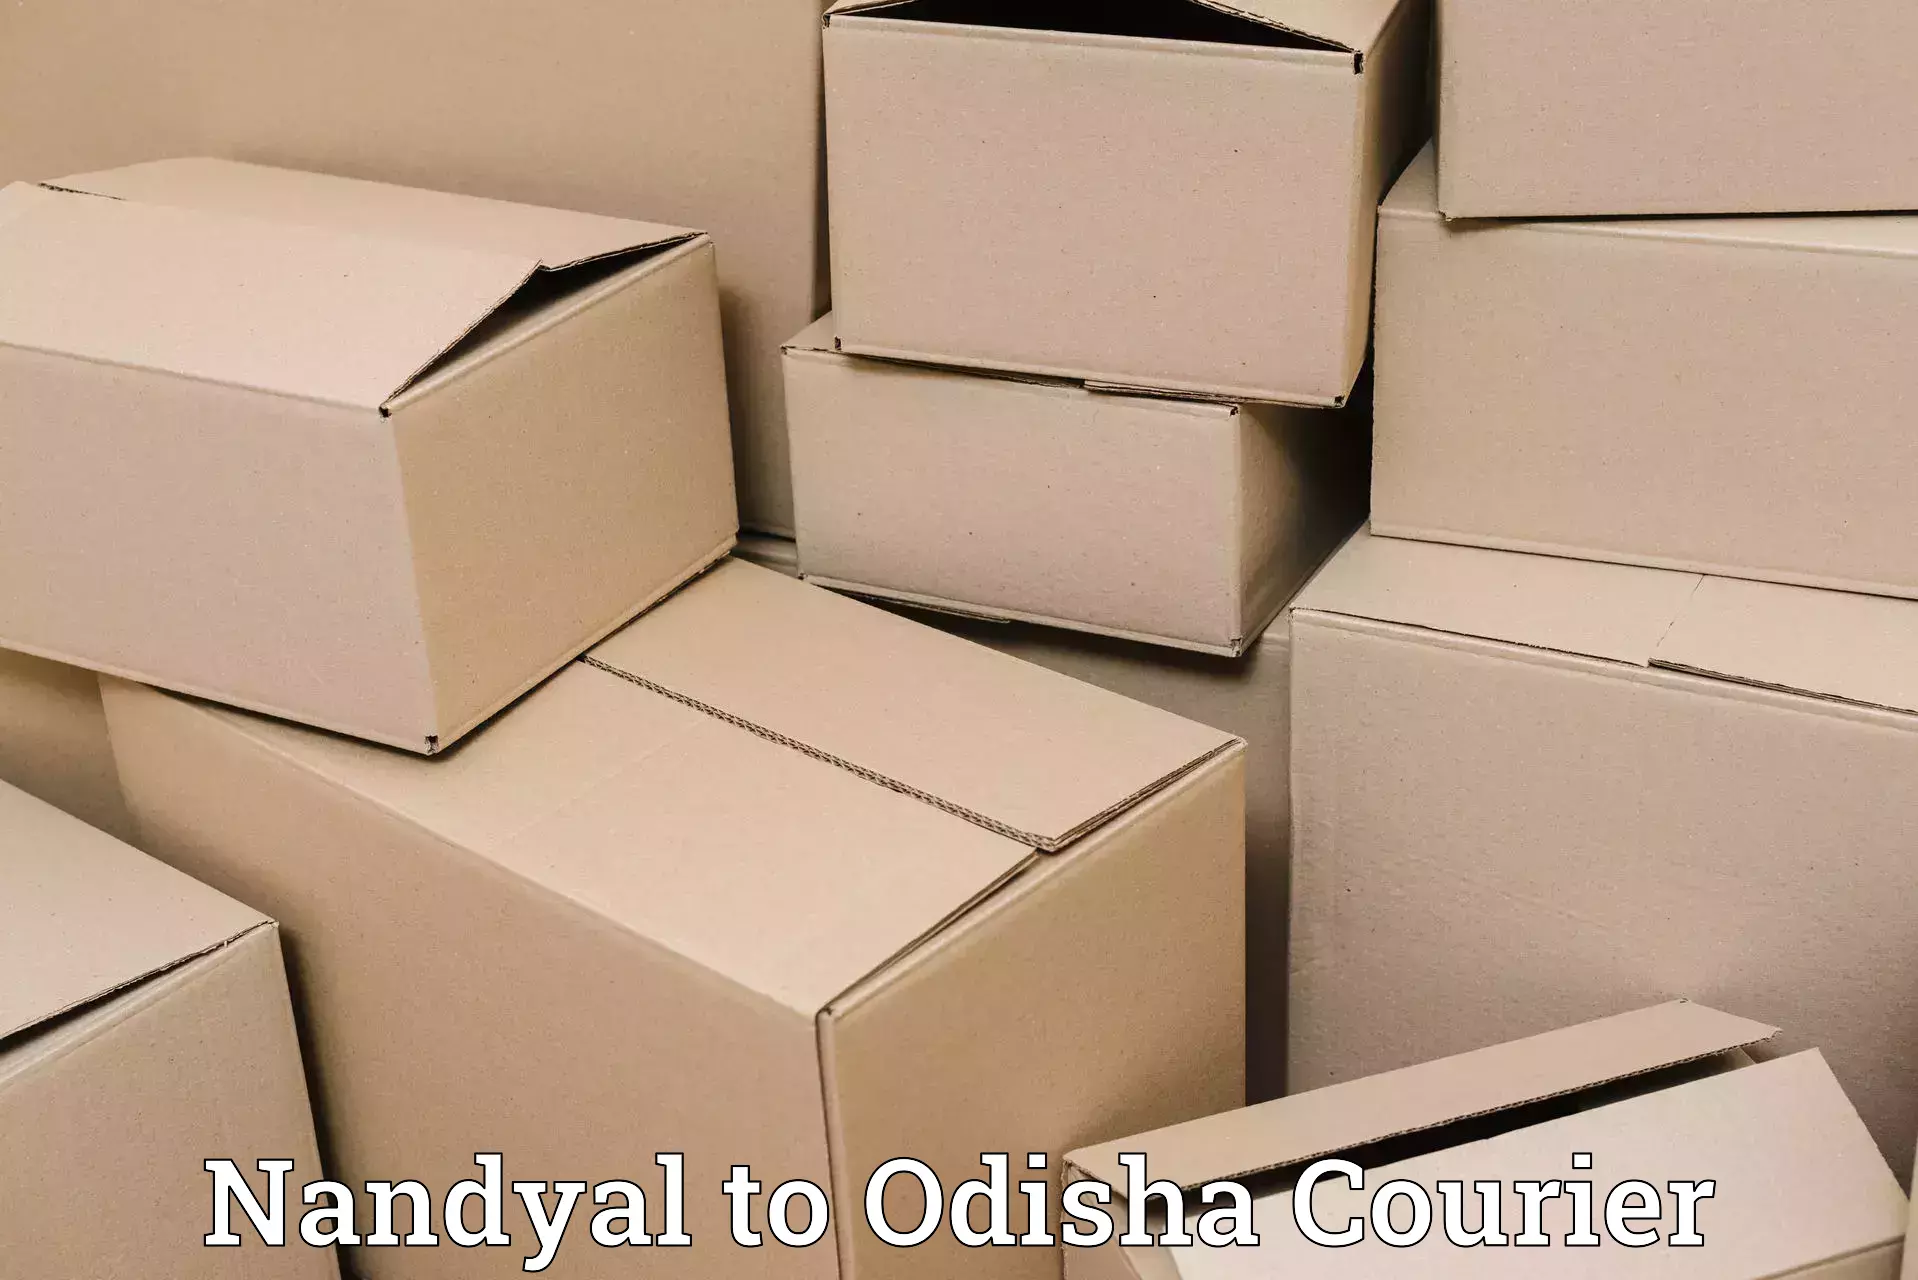 Nationwide shipping capabilities Nandyal to Bahalda